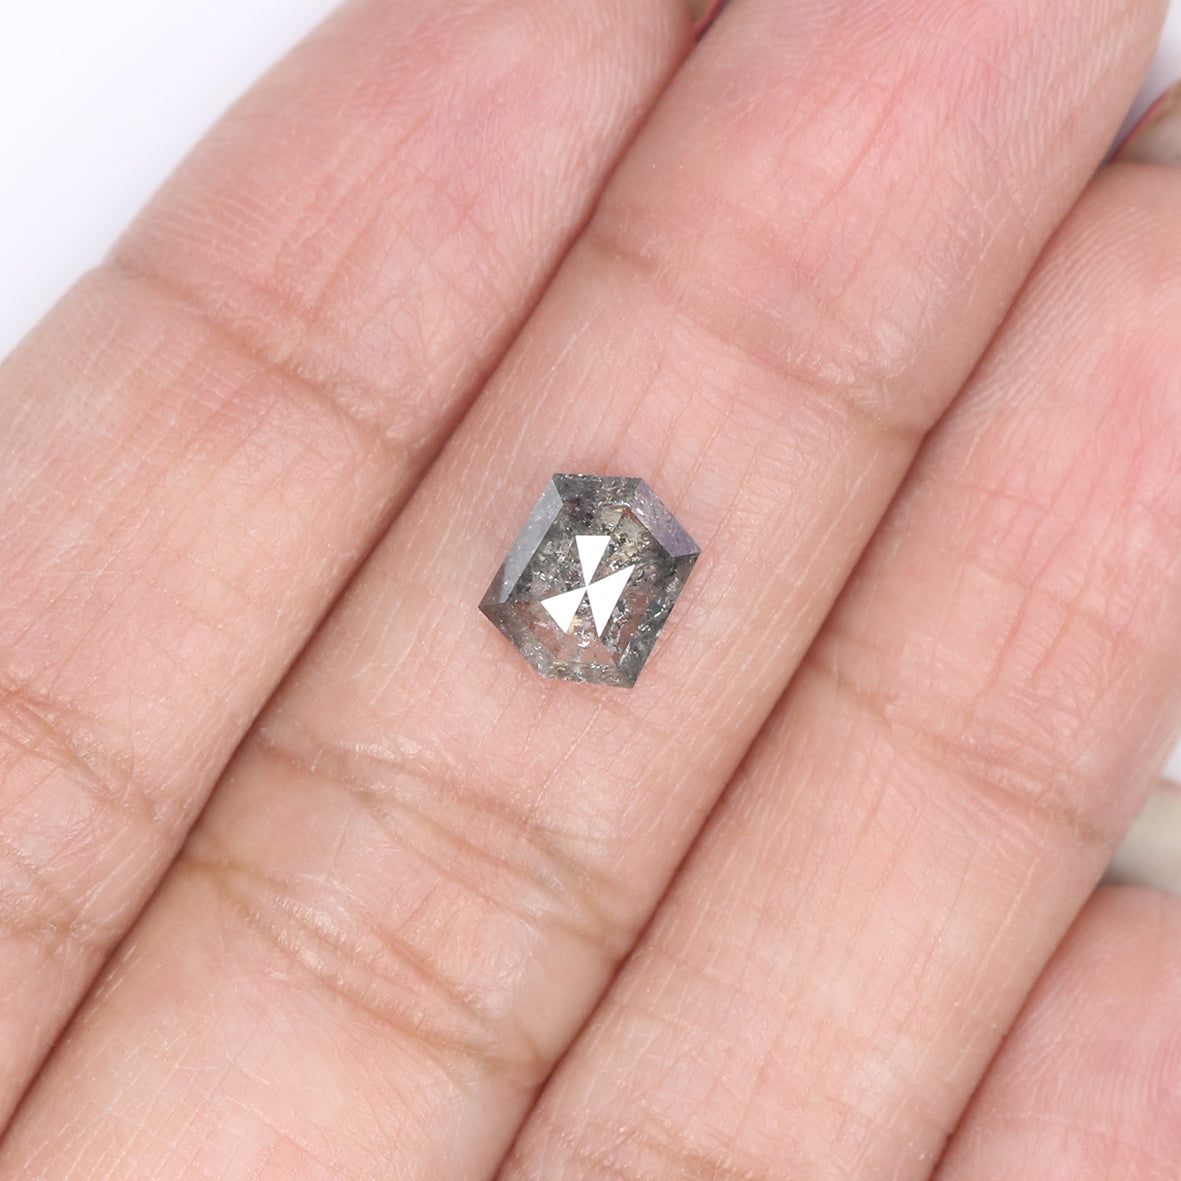 1.30 CT Natural Loose Hexagon Cut Diamond Salt And Pepper Hexagon Diamond 7.55 MM Natural Loose Black Grey Color Hexagon Cut Diamond QL2058